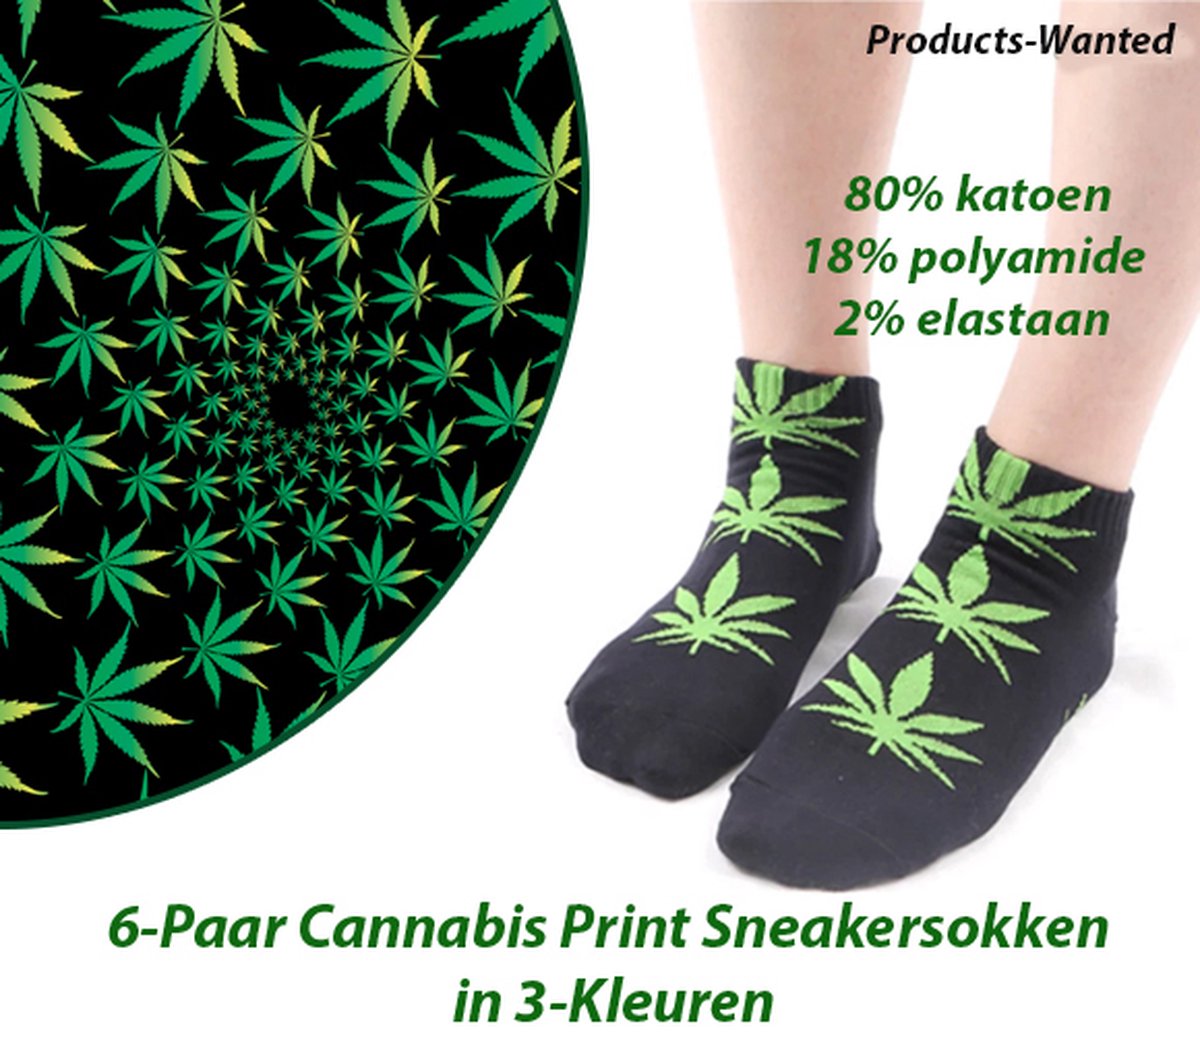 6-Paar Cannabis Print Sneakersokken in 3-Kleuren (36-41)